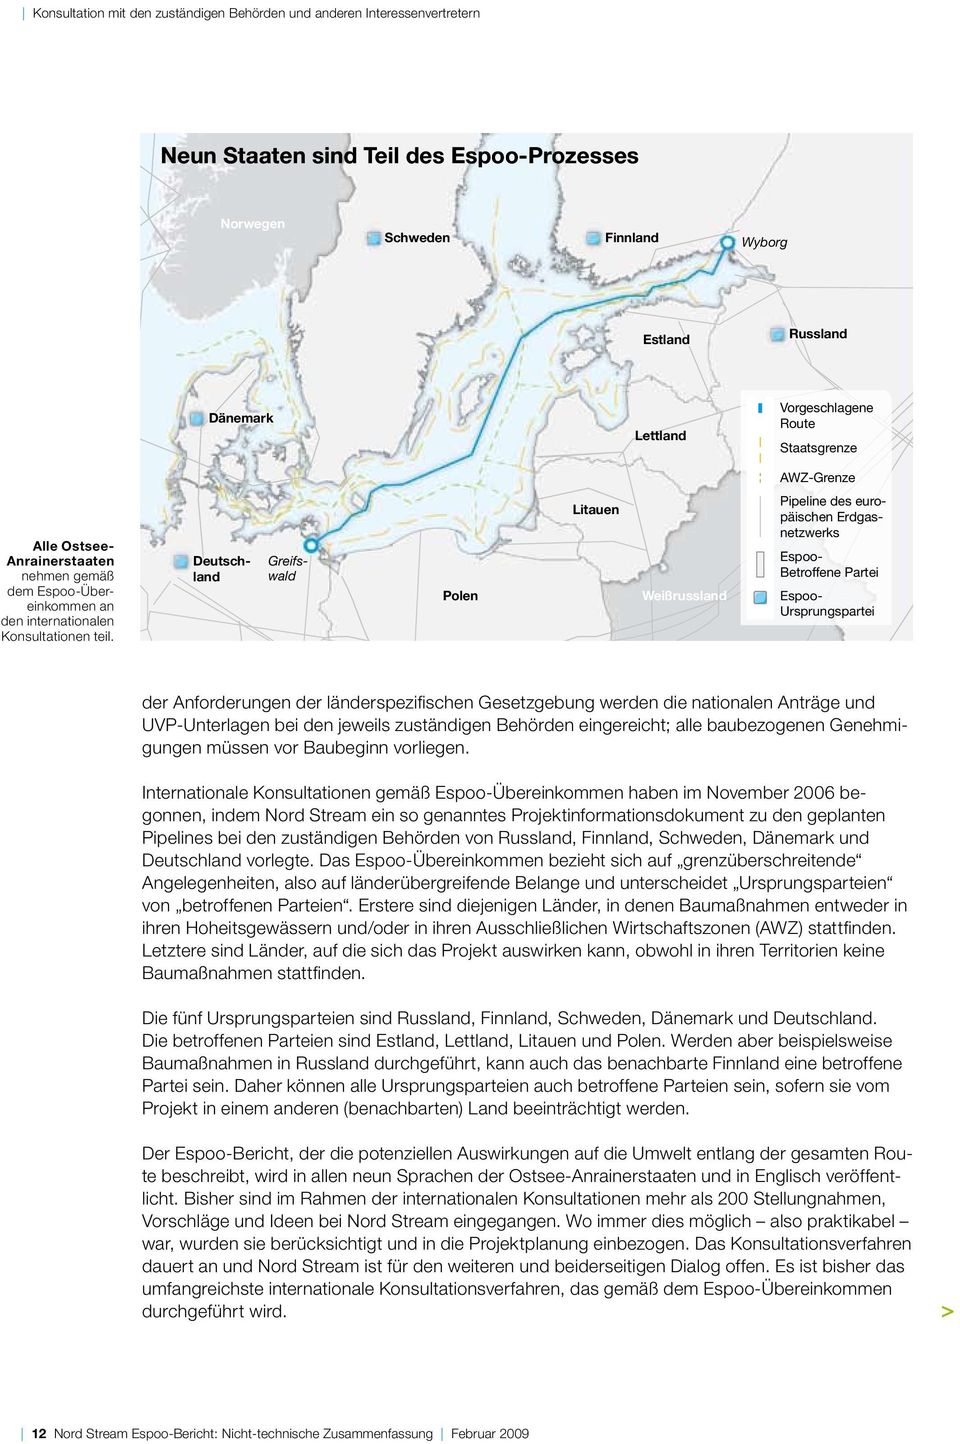 Deutschland Greifs- wald Polen Litauen Weißrussland Pipeline des europäischen Erdgasnetzwerks Espoo- Betroffene Partei Espoo- Ursprungspartei der Anforderungen der länderspezifischen Gesetzgebung